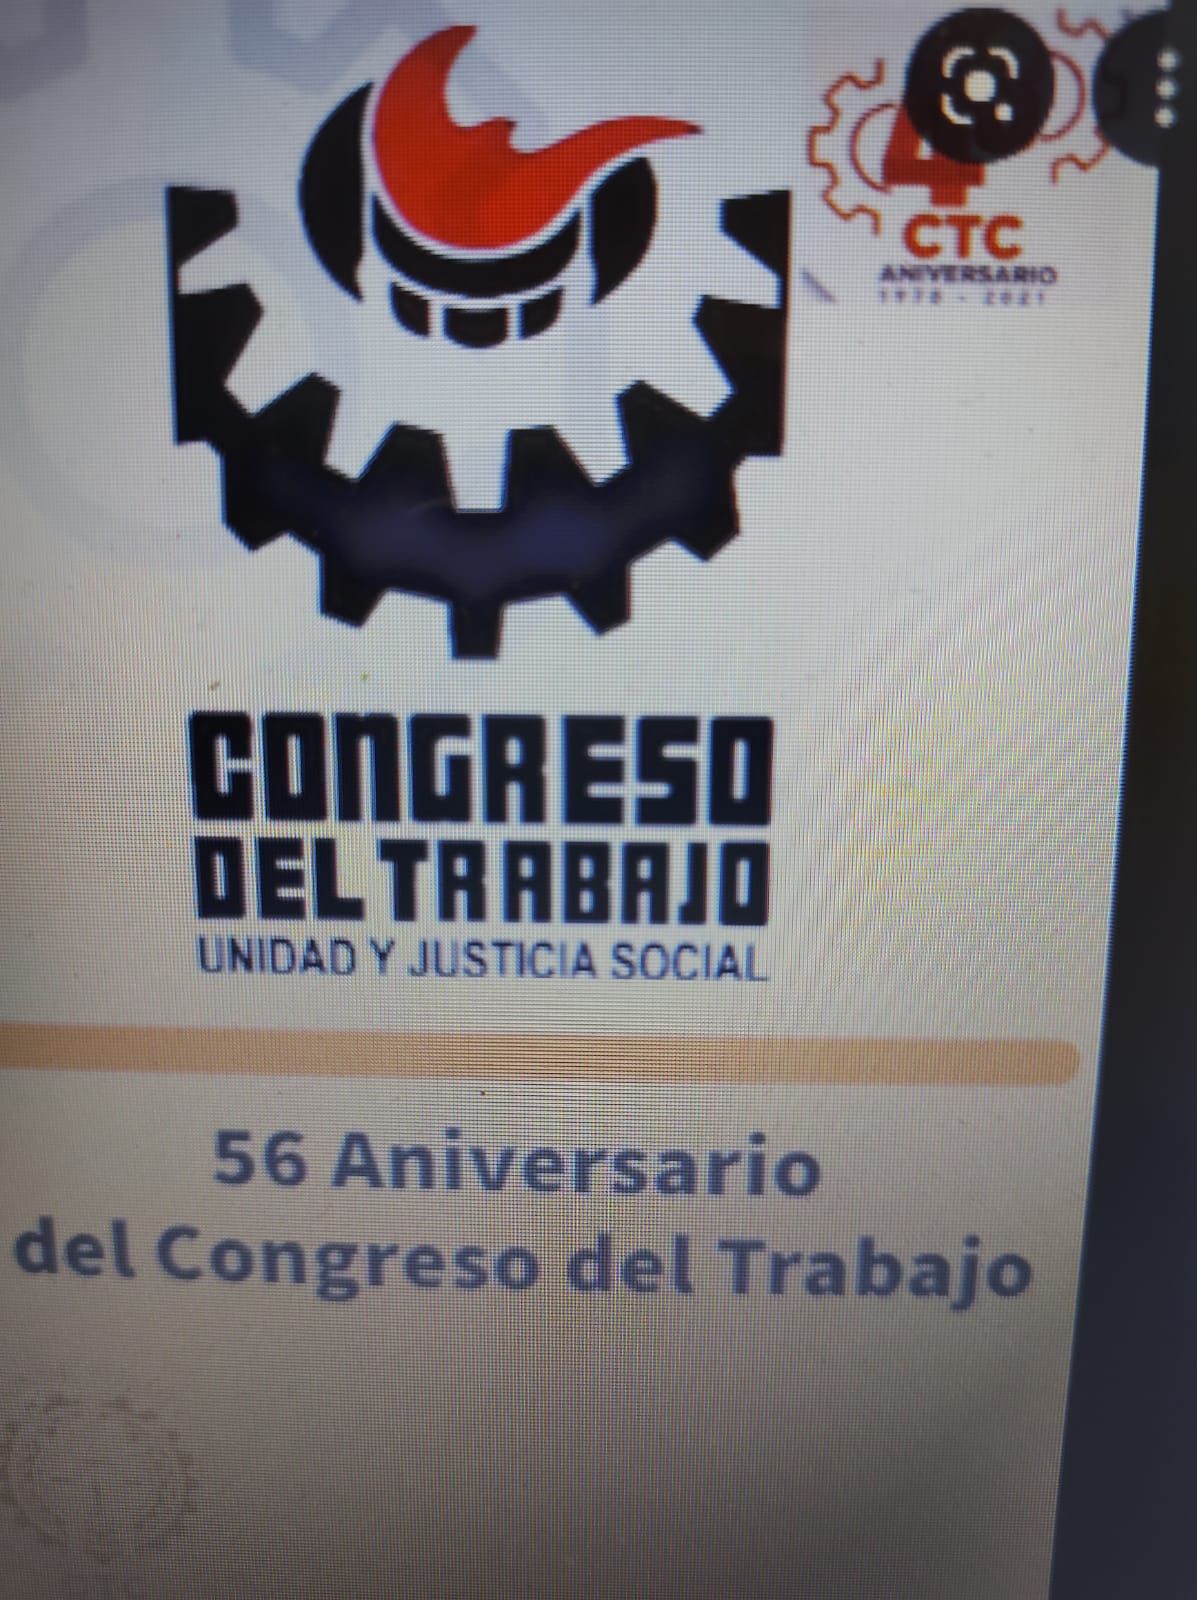 #El Congreso del Trabajo conmemoro con unidad 56 años de su fundación